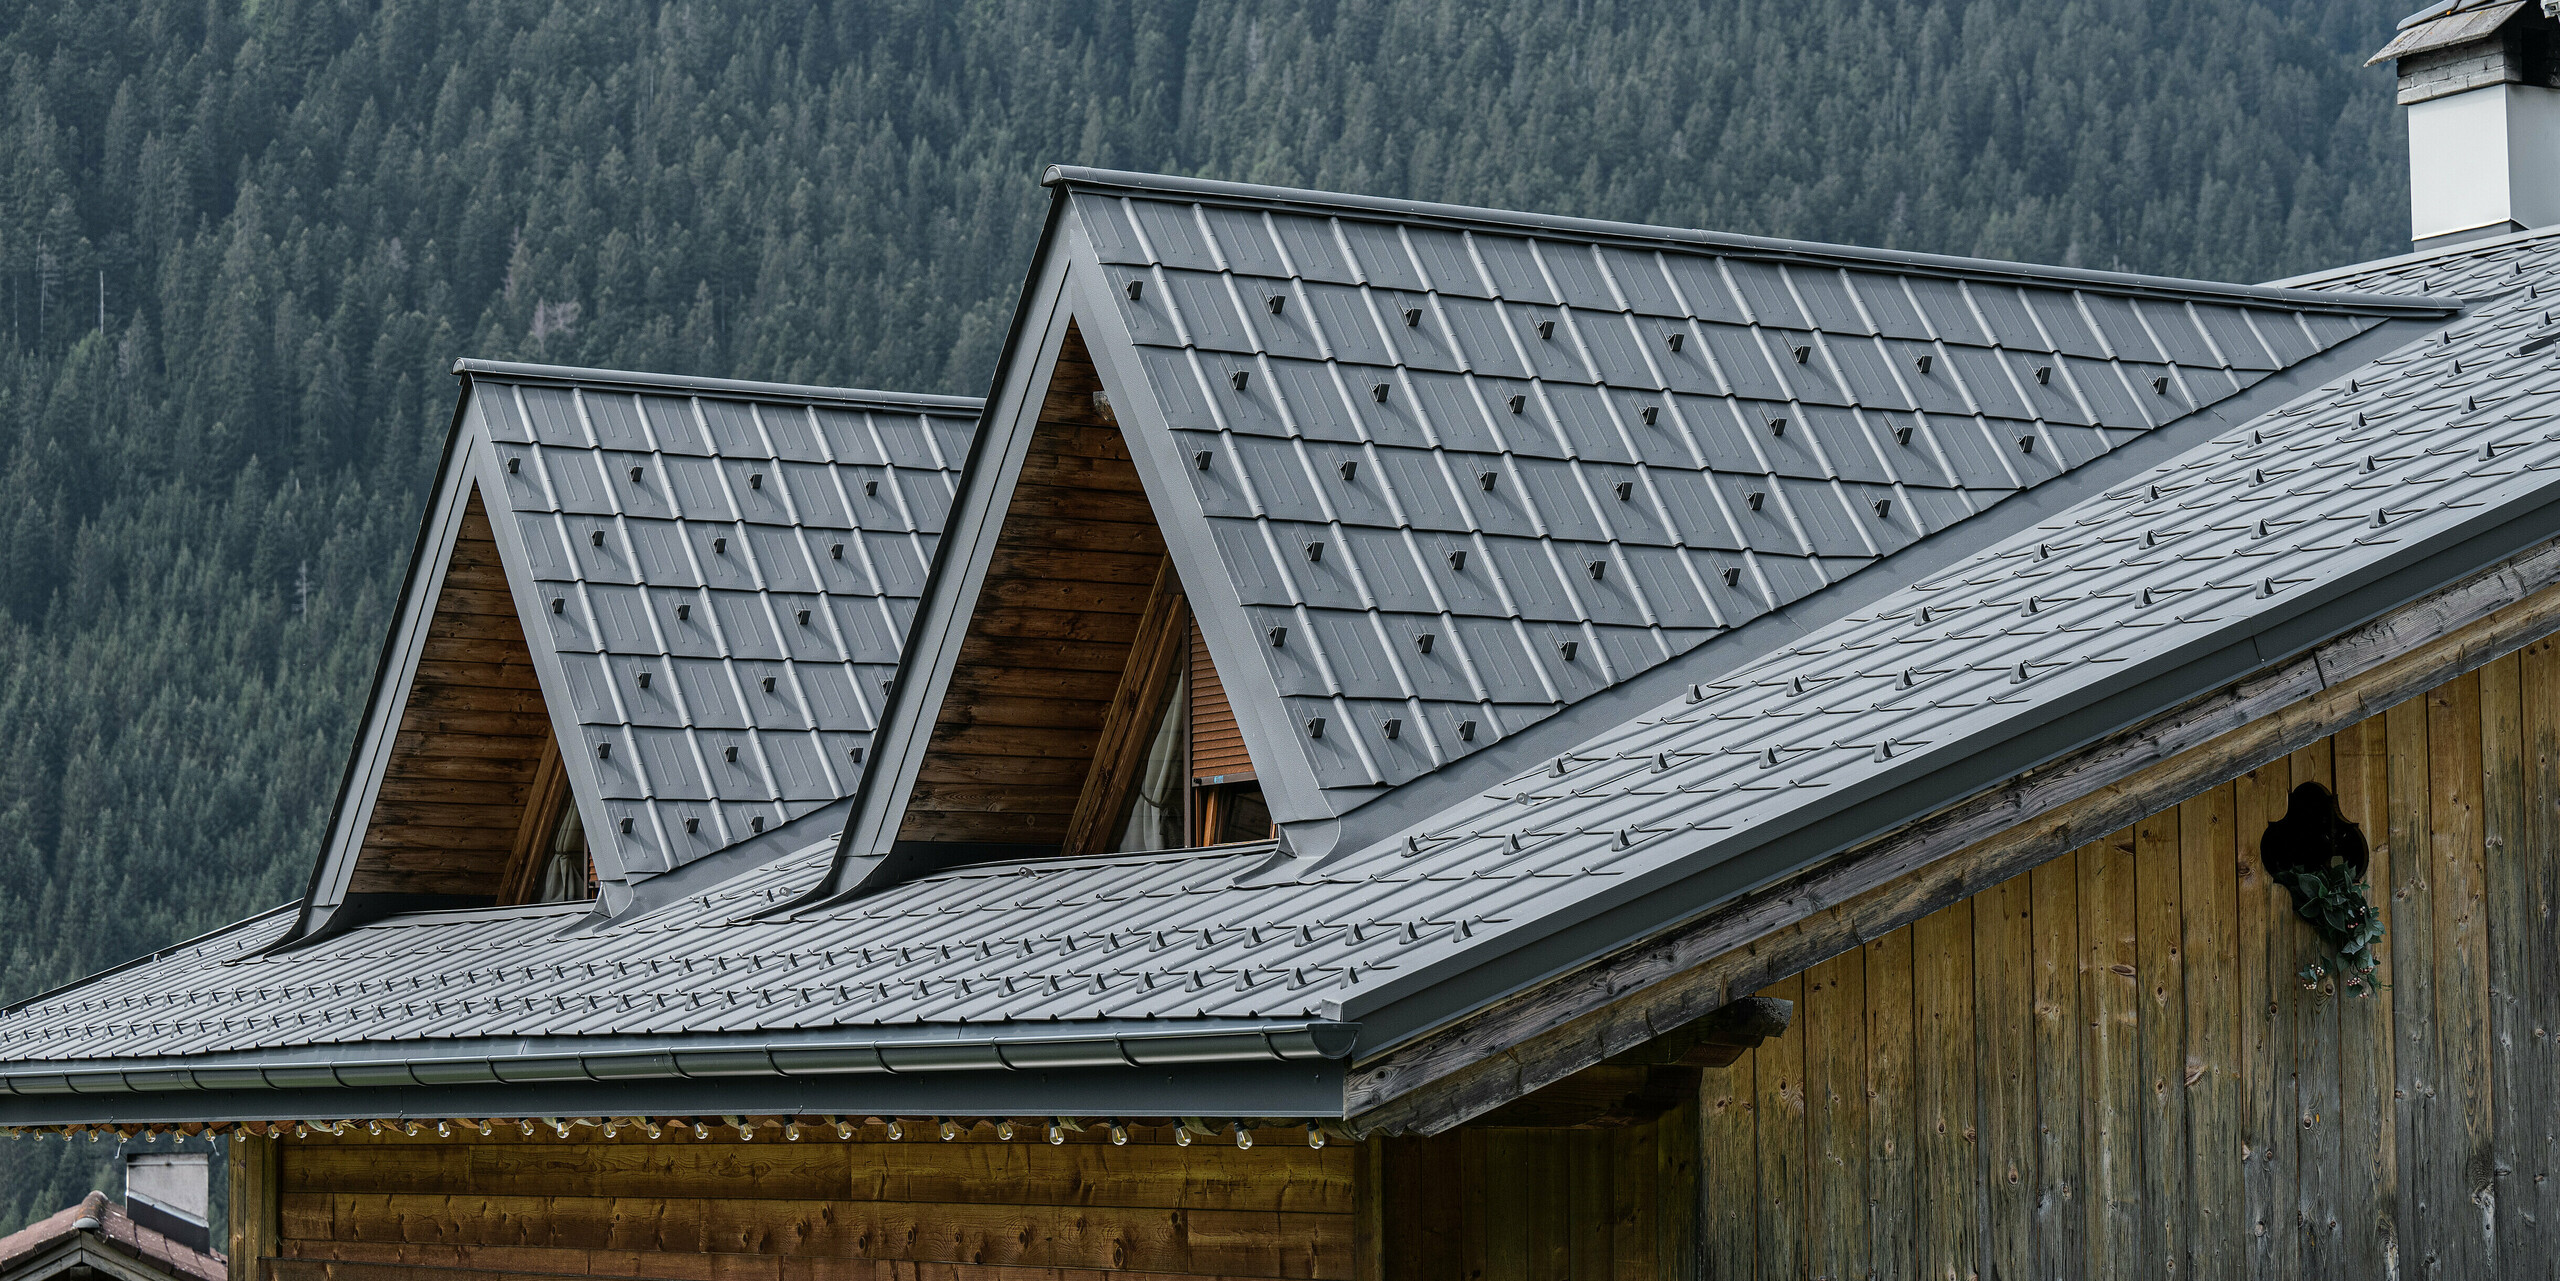 Detailní záběr na alpský dům v Auronzo di Cadore s nově instalovanou střechou PREFA v barvě P.10 světle šedé. Hliníkové falcované tašky nabízejí moderní dotek tradičního alpského architektonického stylu. Svou texturou a barvou vytvářejí hliníkové produkty harmonický vztah s okolní lesní krajinou. Tento obrázek ilustruje kombinaci regionálního řemesla s inovativními stavebními materiály s dlouhou životností.